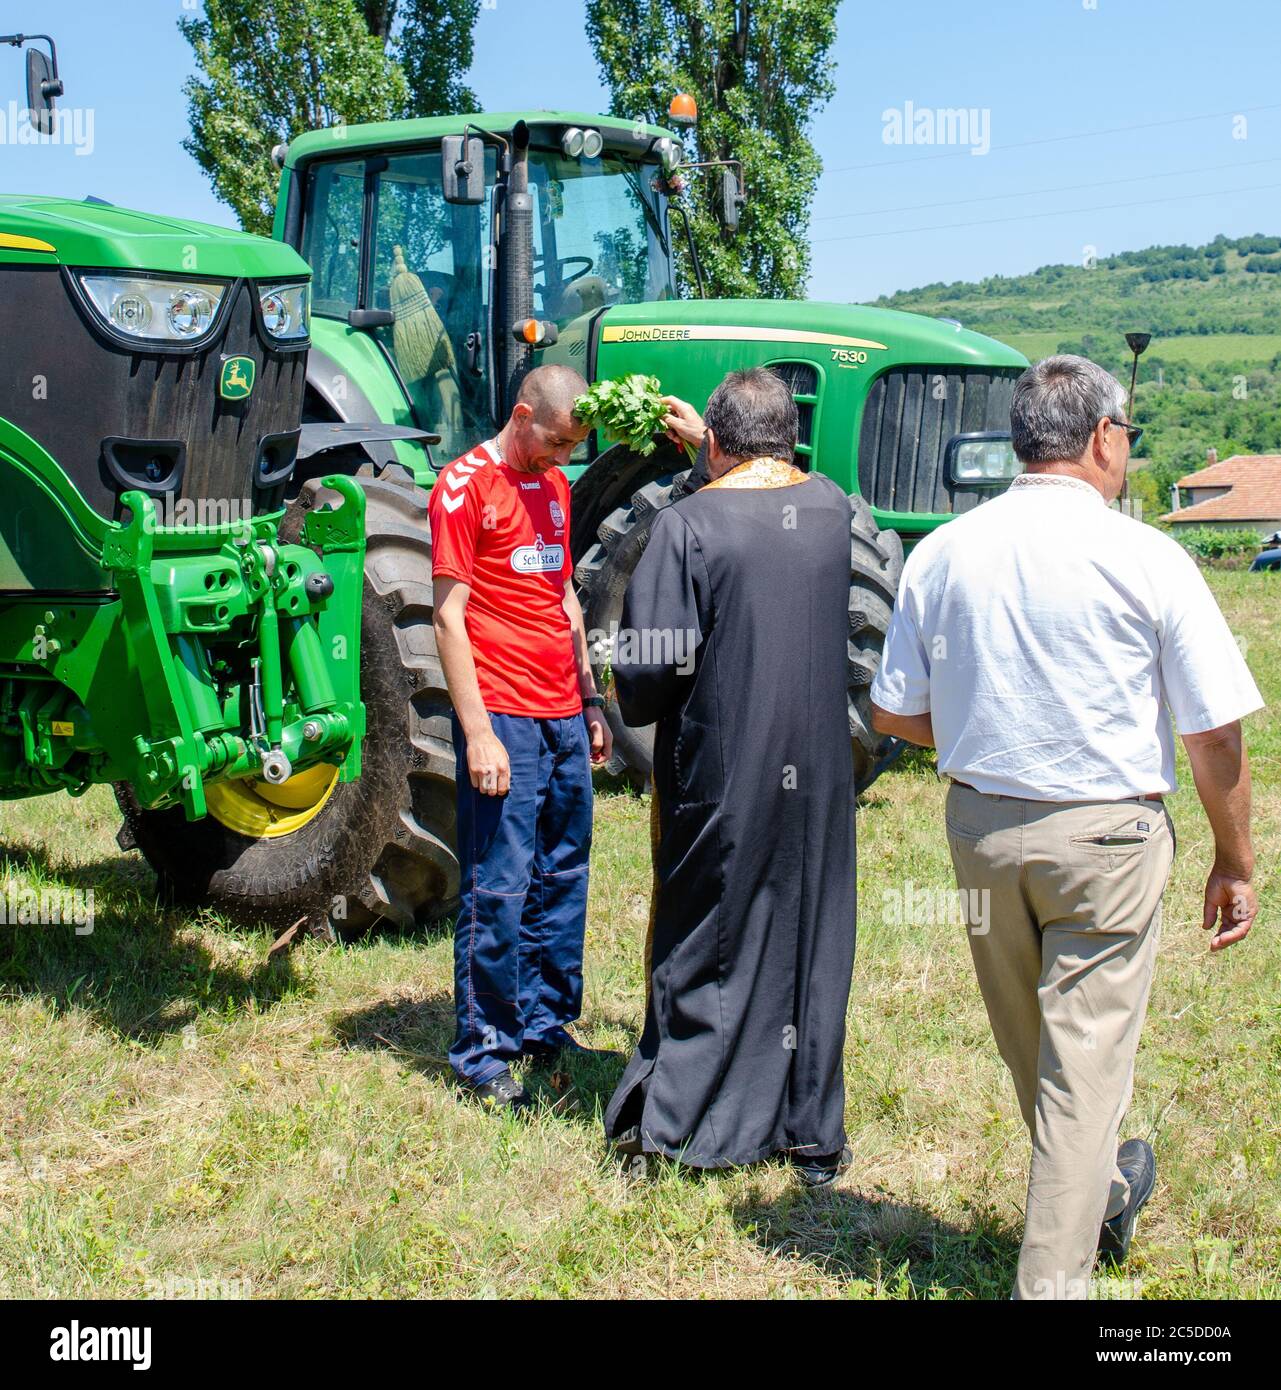 Le prêtre bulgare bénit les ouvriers agricoles locaux et les machines agricoles au festival culturel traditionnel de la récolte de blé Banque D'Images